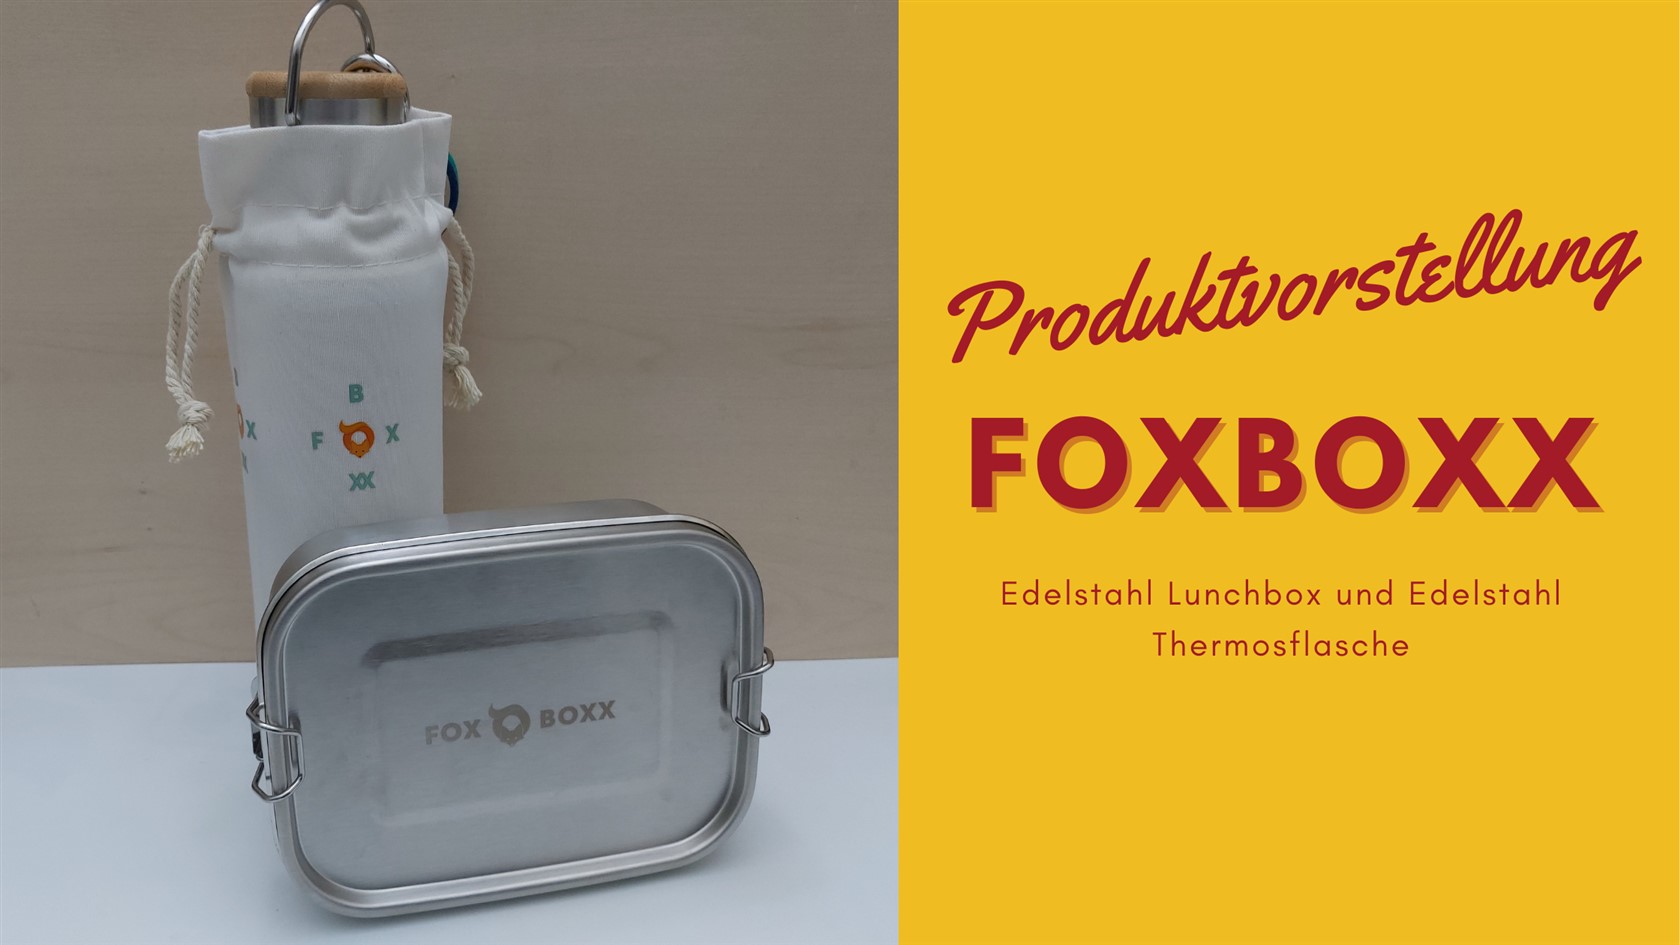 Foxboxx 1680 x 945